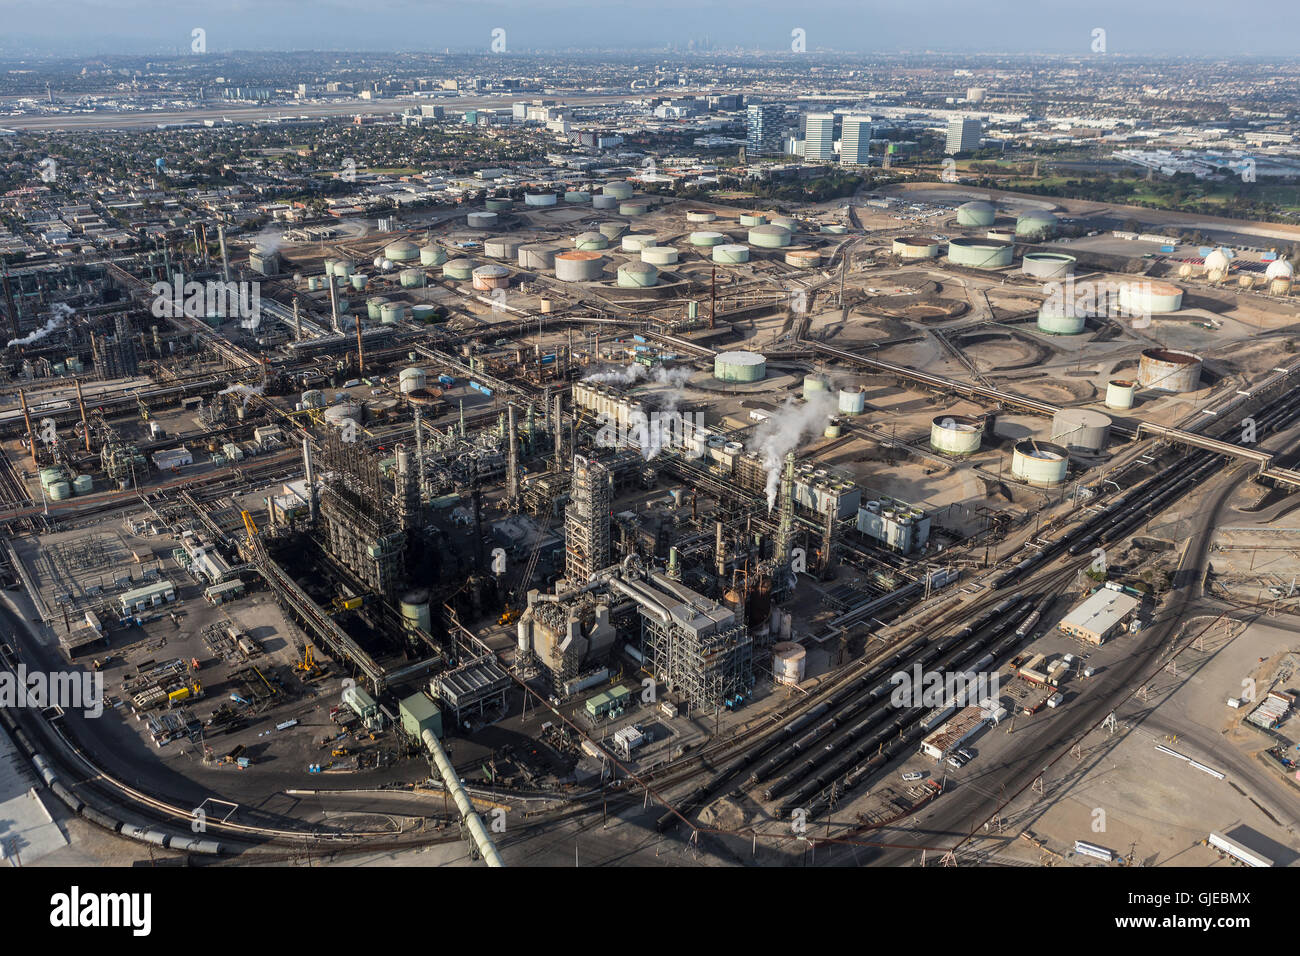 El Segundo, California, Stati Uniti d'America - 6 Agosto 2016: Veduta aerea della cottura a vapore grande raffineria di petrolio nei pressi di Los Angeles. Foto Stock